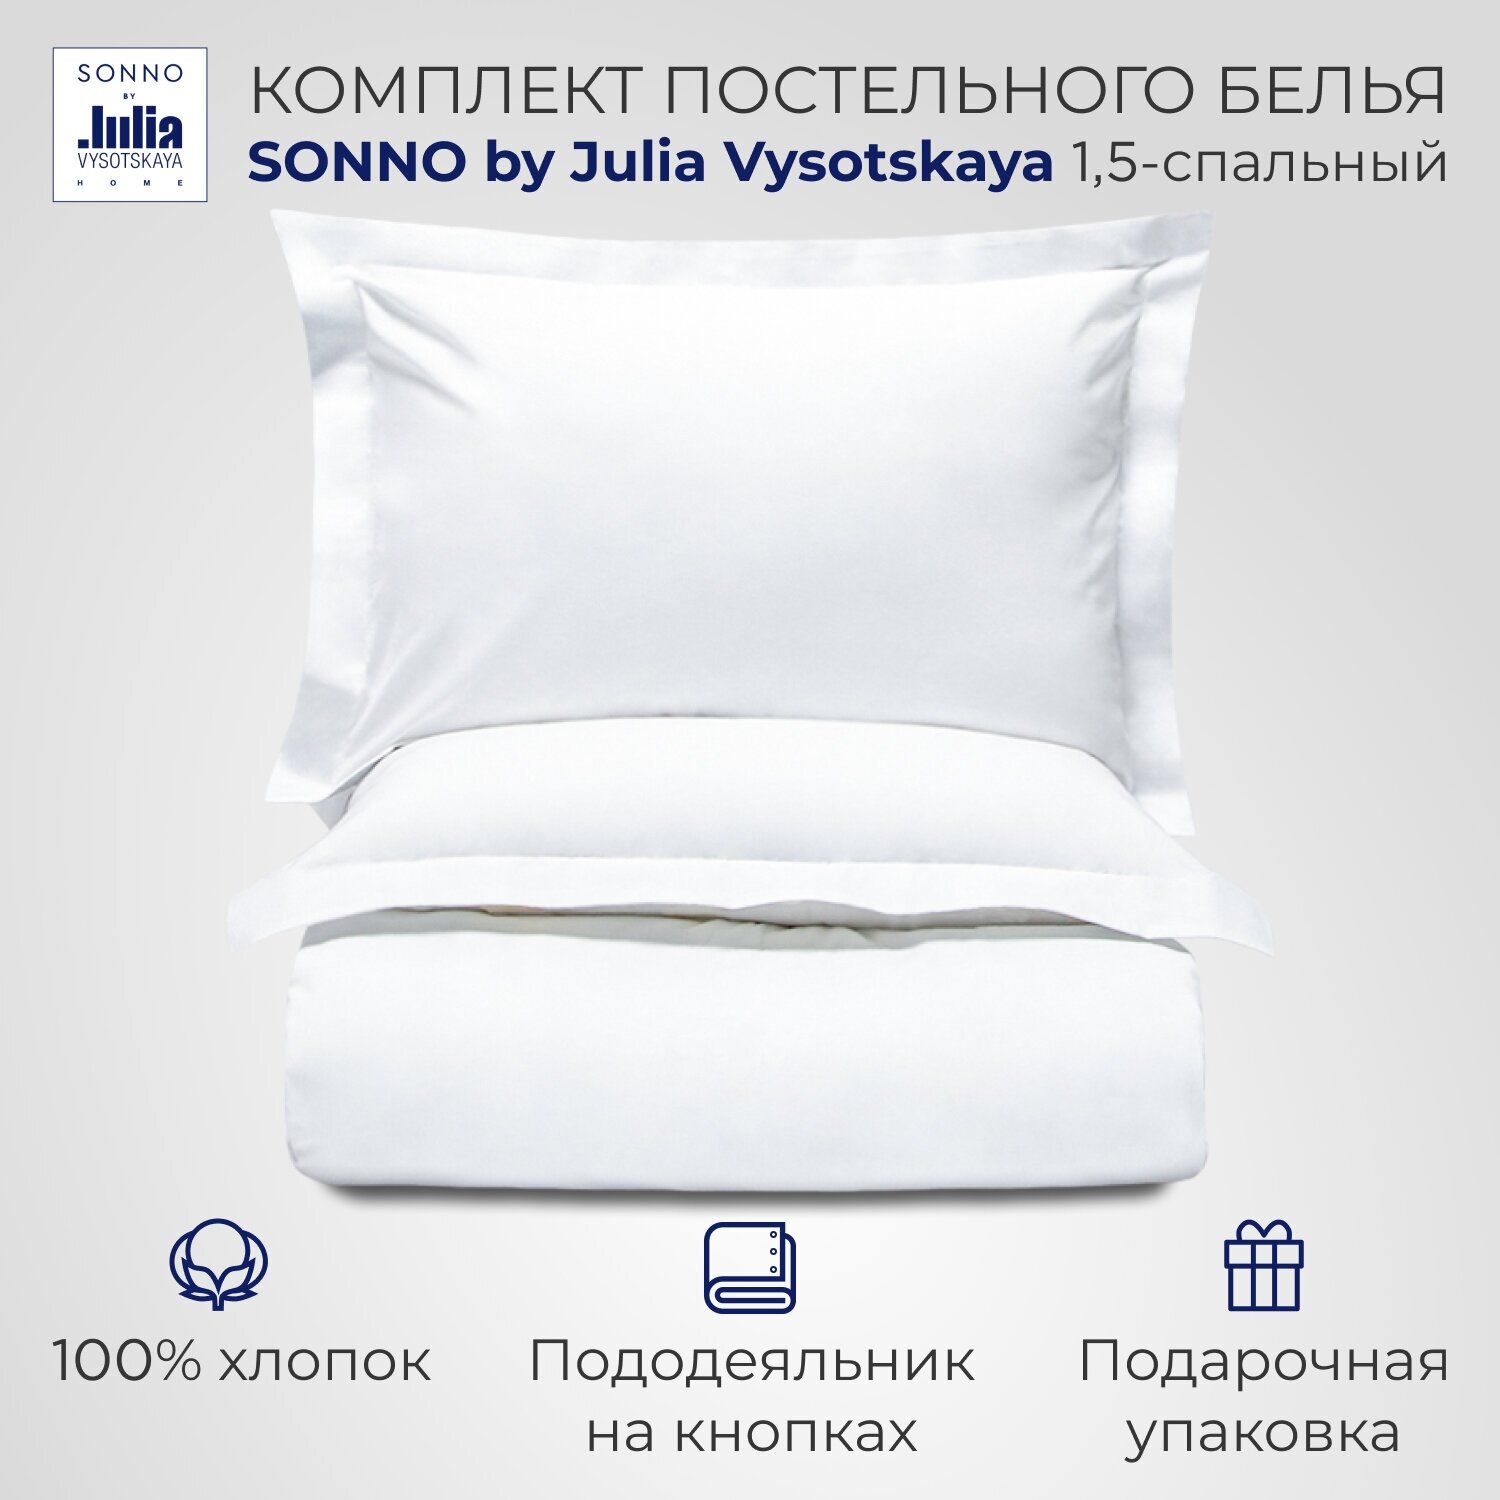 Комплект постельного белья SONNO by Julia Vysotskaya, 1.5-спальное, поплин, голубой 